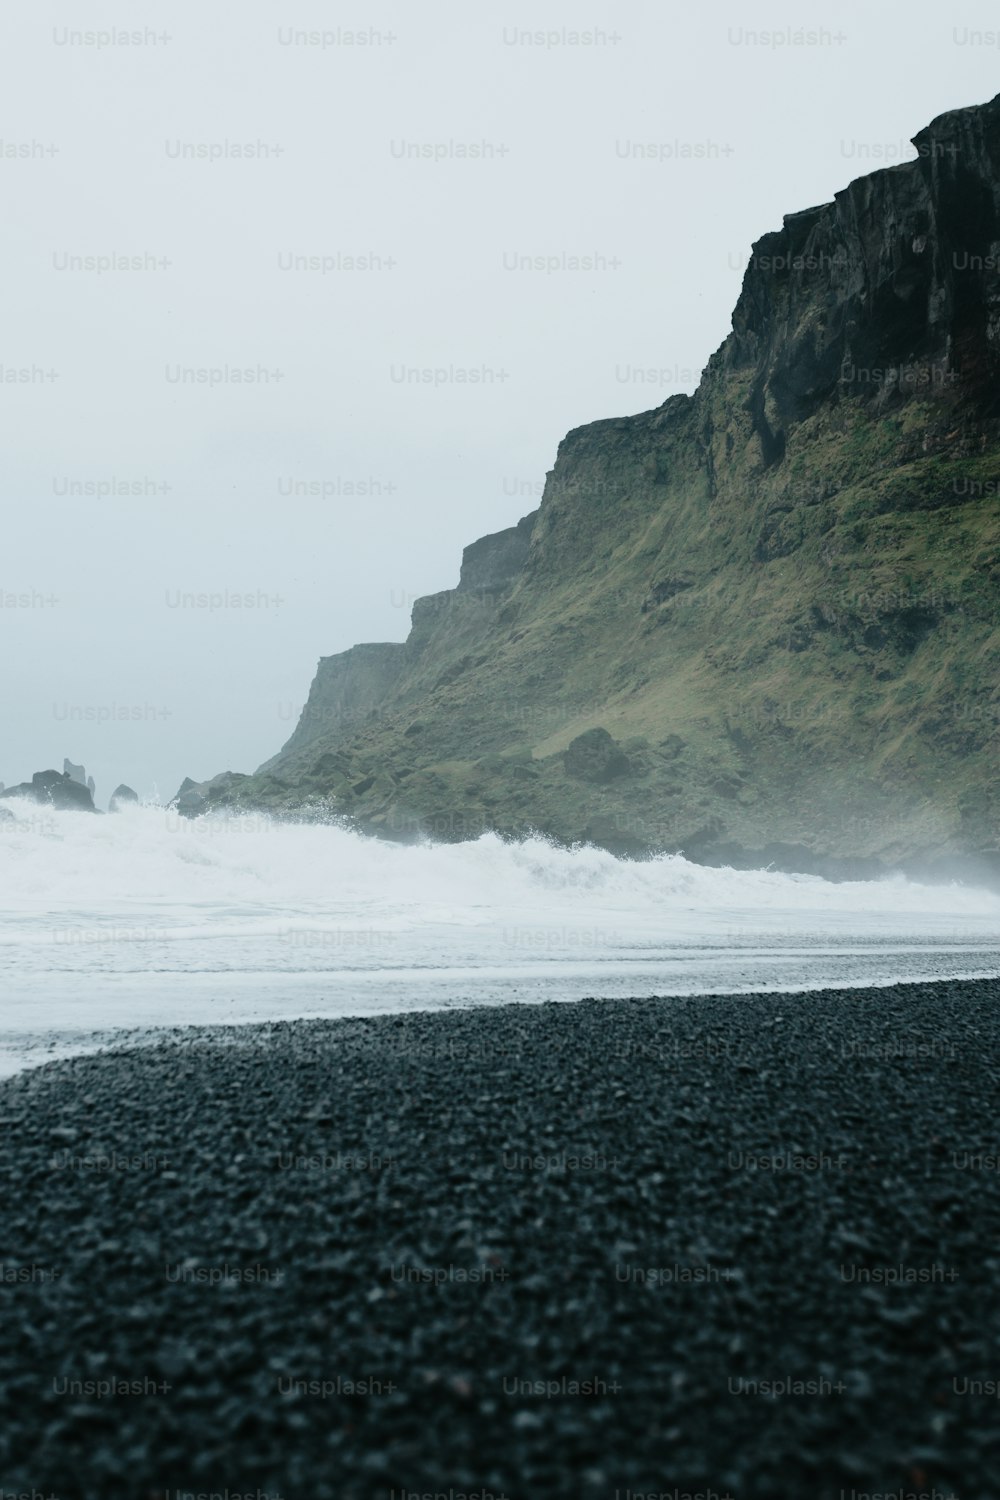 uma pessoa caminhando em uma praia perto do oceano